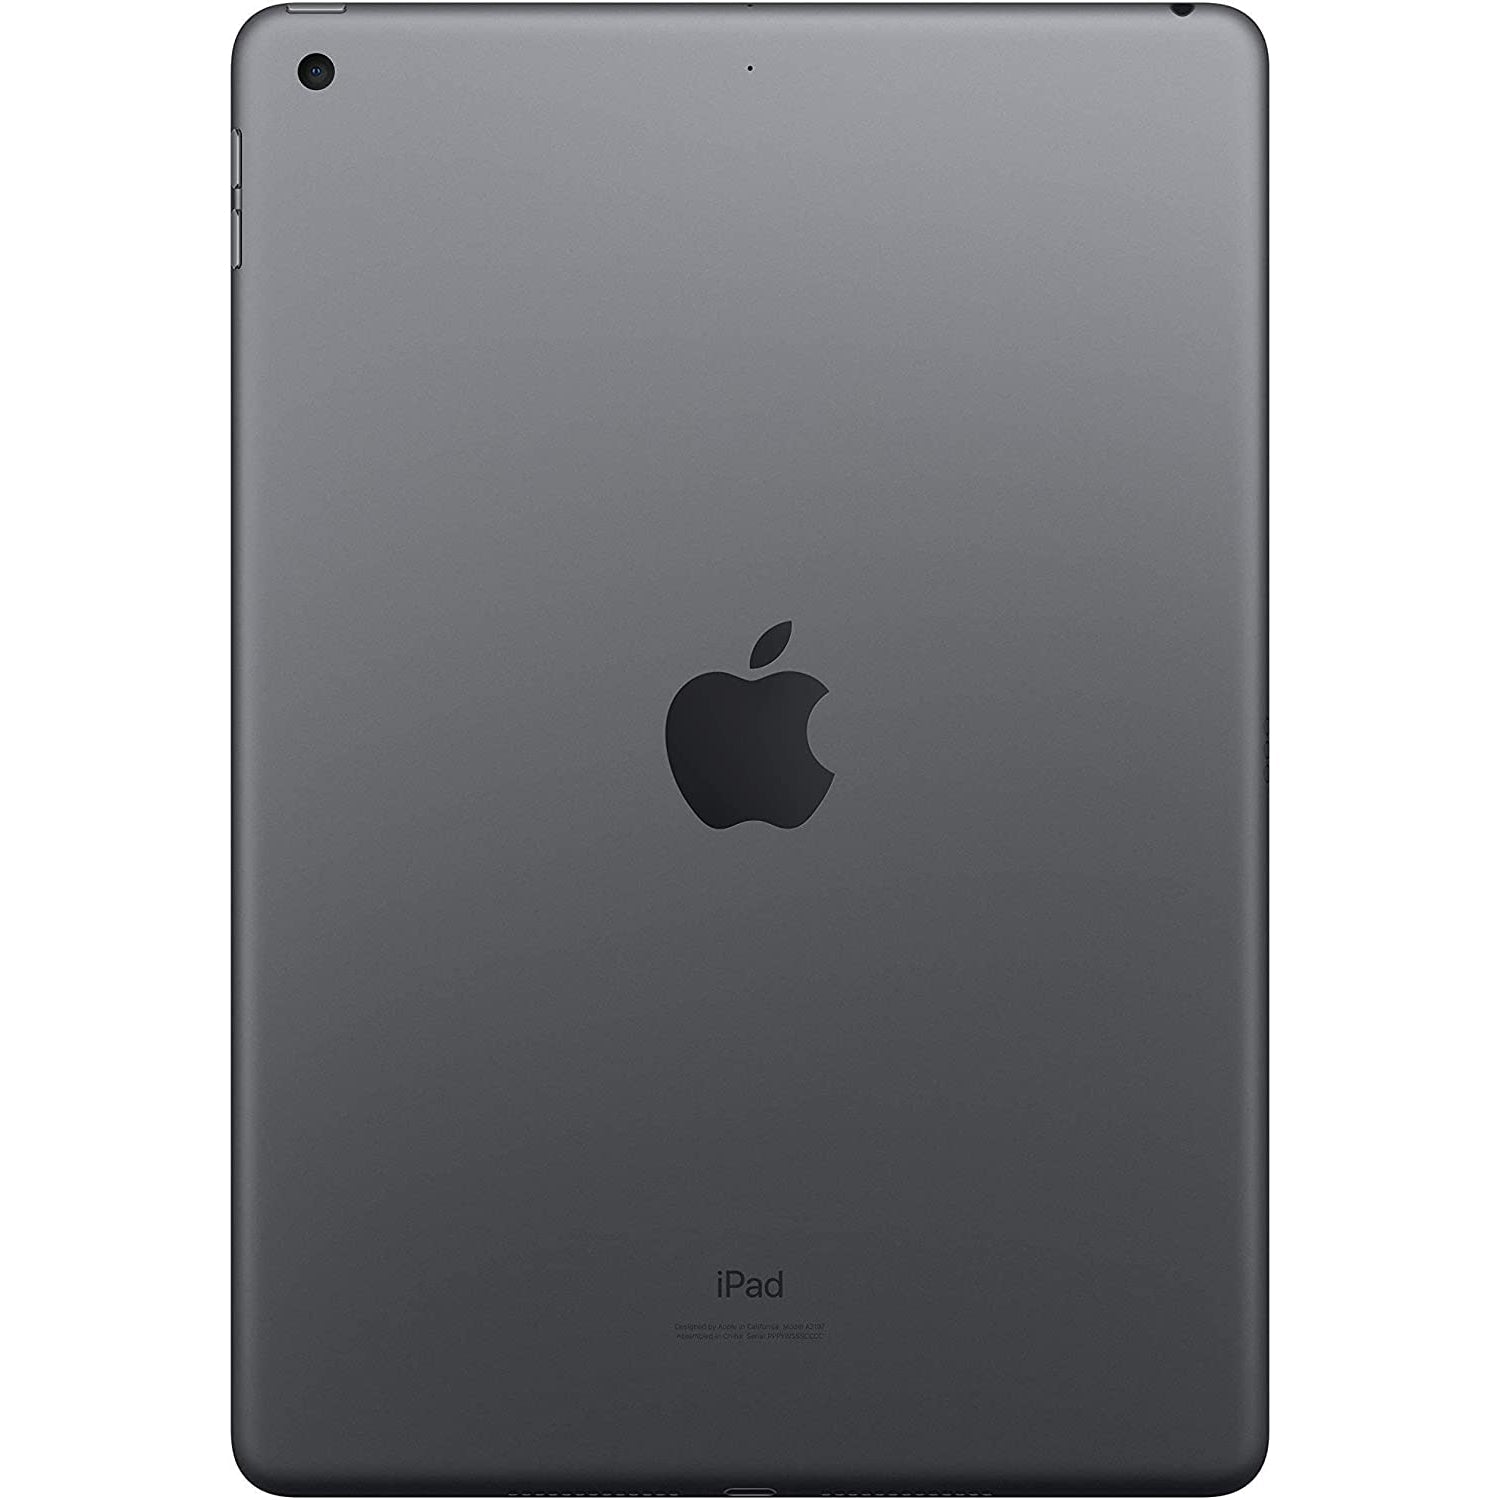 Apple iPad 10.2" 2019 - Wi-Fi + Cellular - 128GB - Space Grey - Refurbished Good